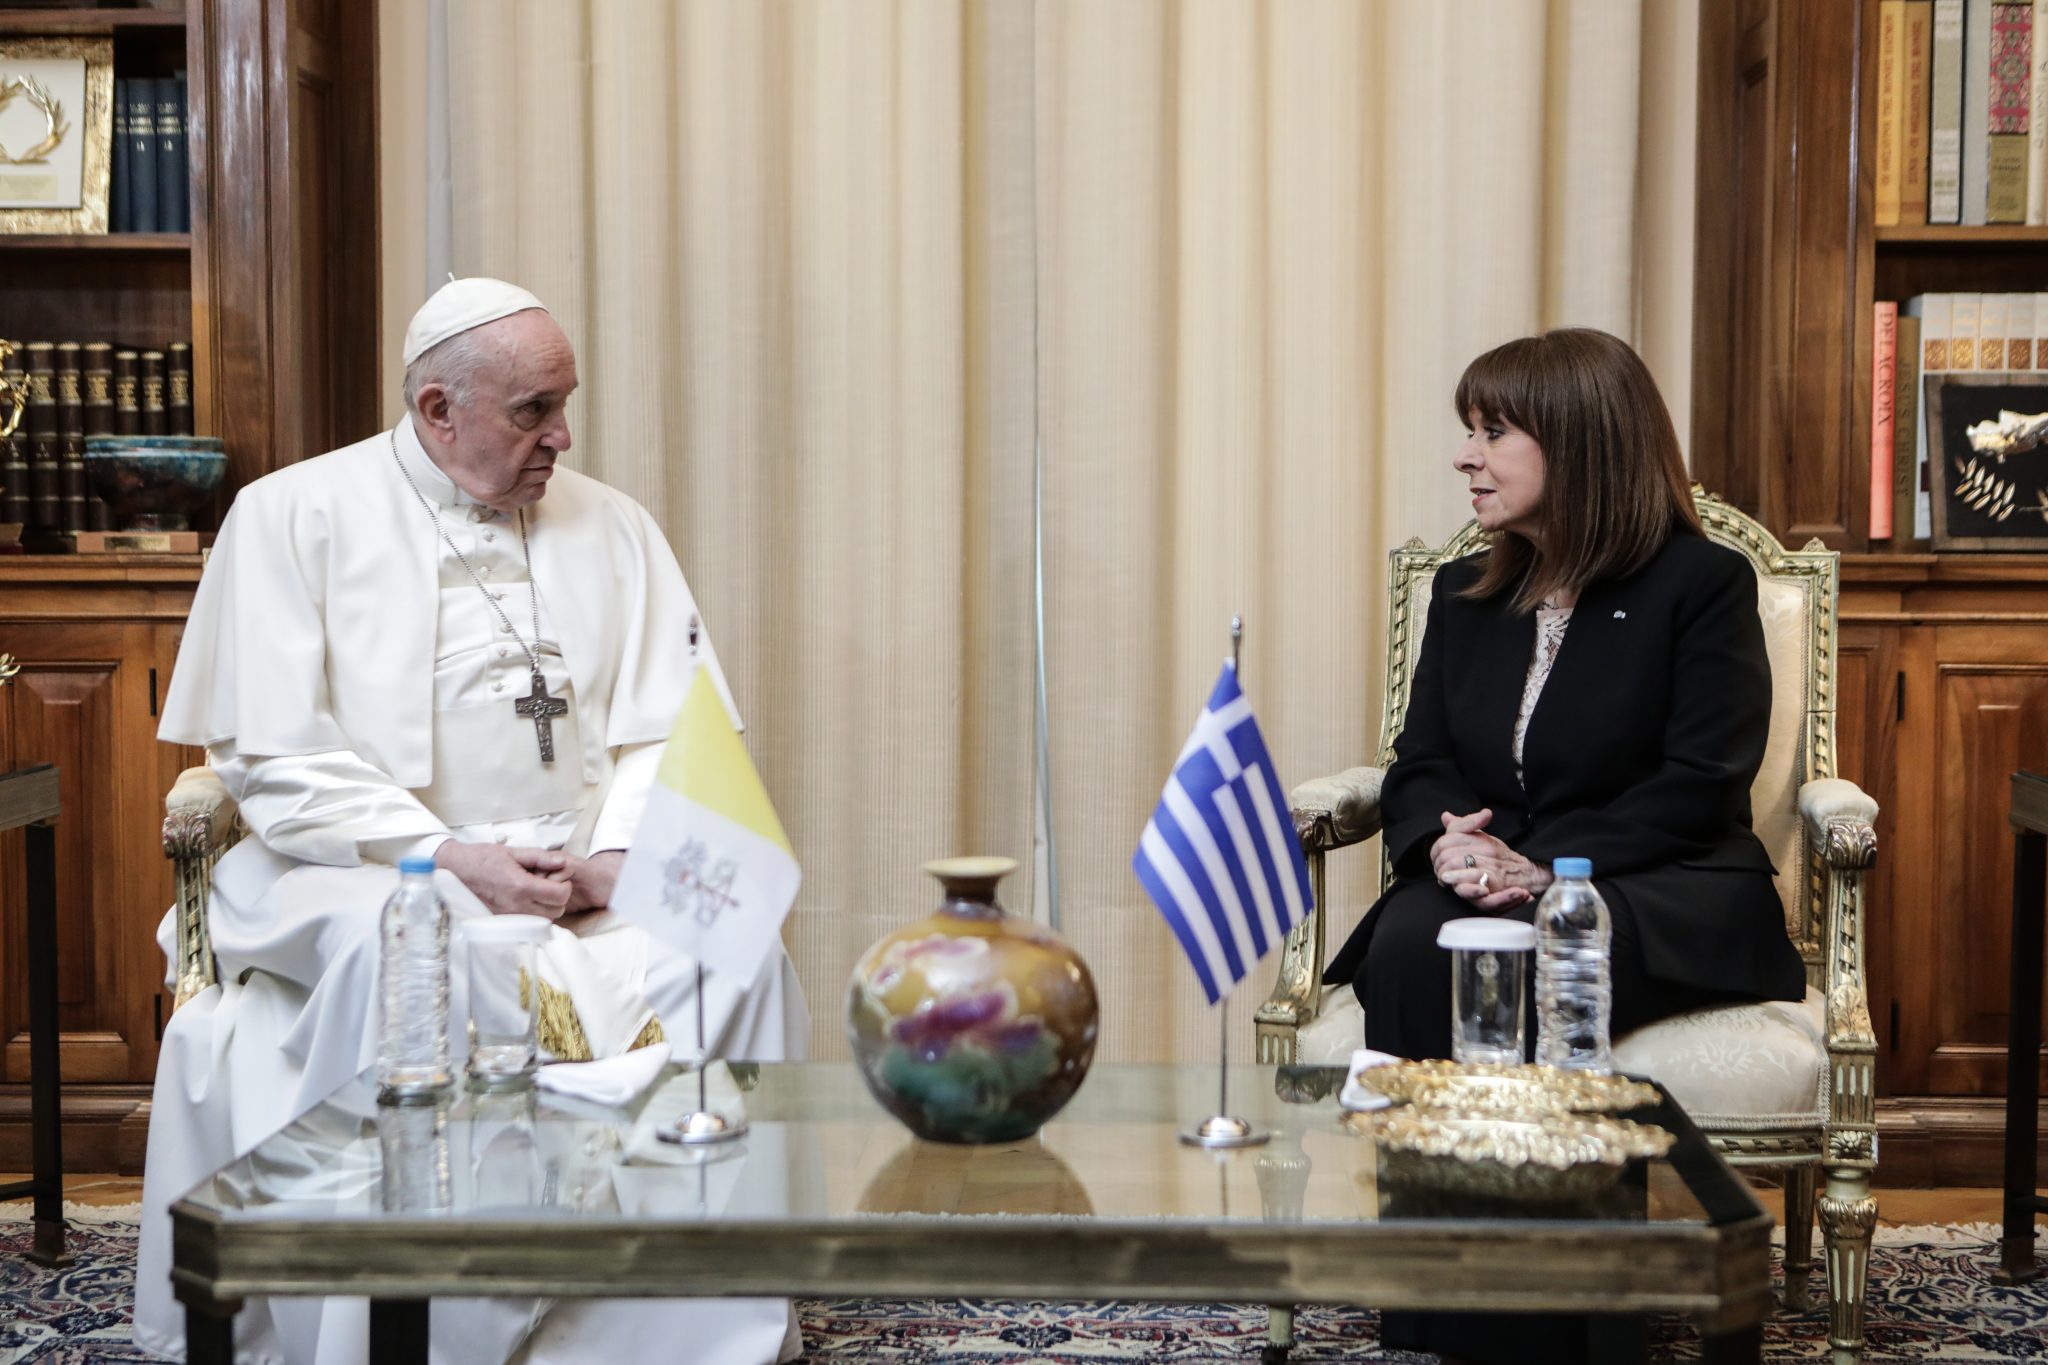 Πάπας Φραγκίσκος: Στην Ελλάδα διευρύνθηκαν οι ορίζοντες της ανθρωπότητας